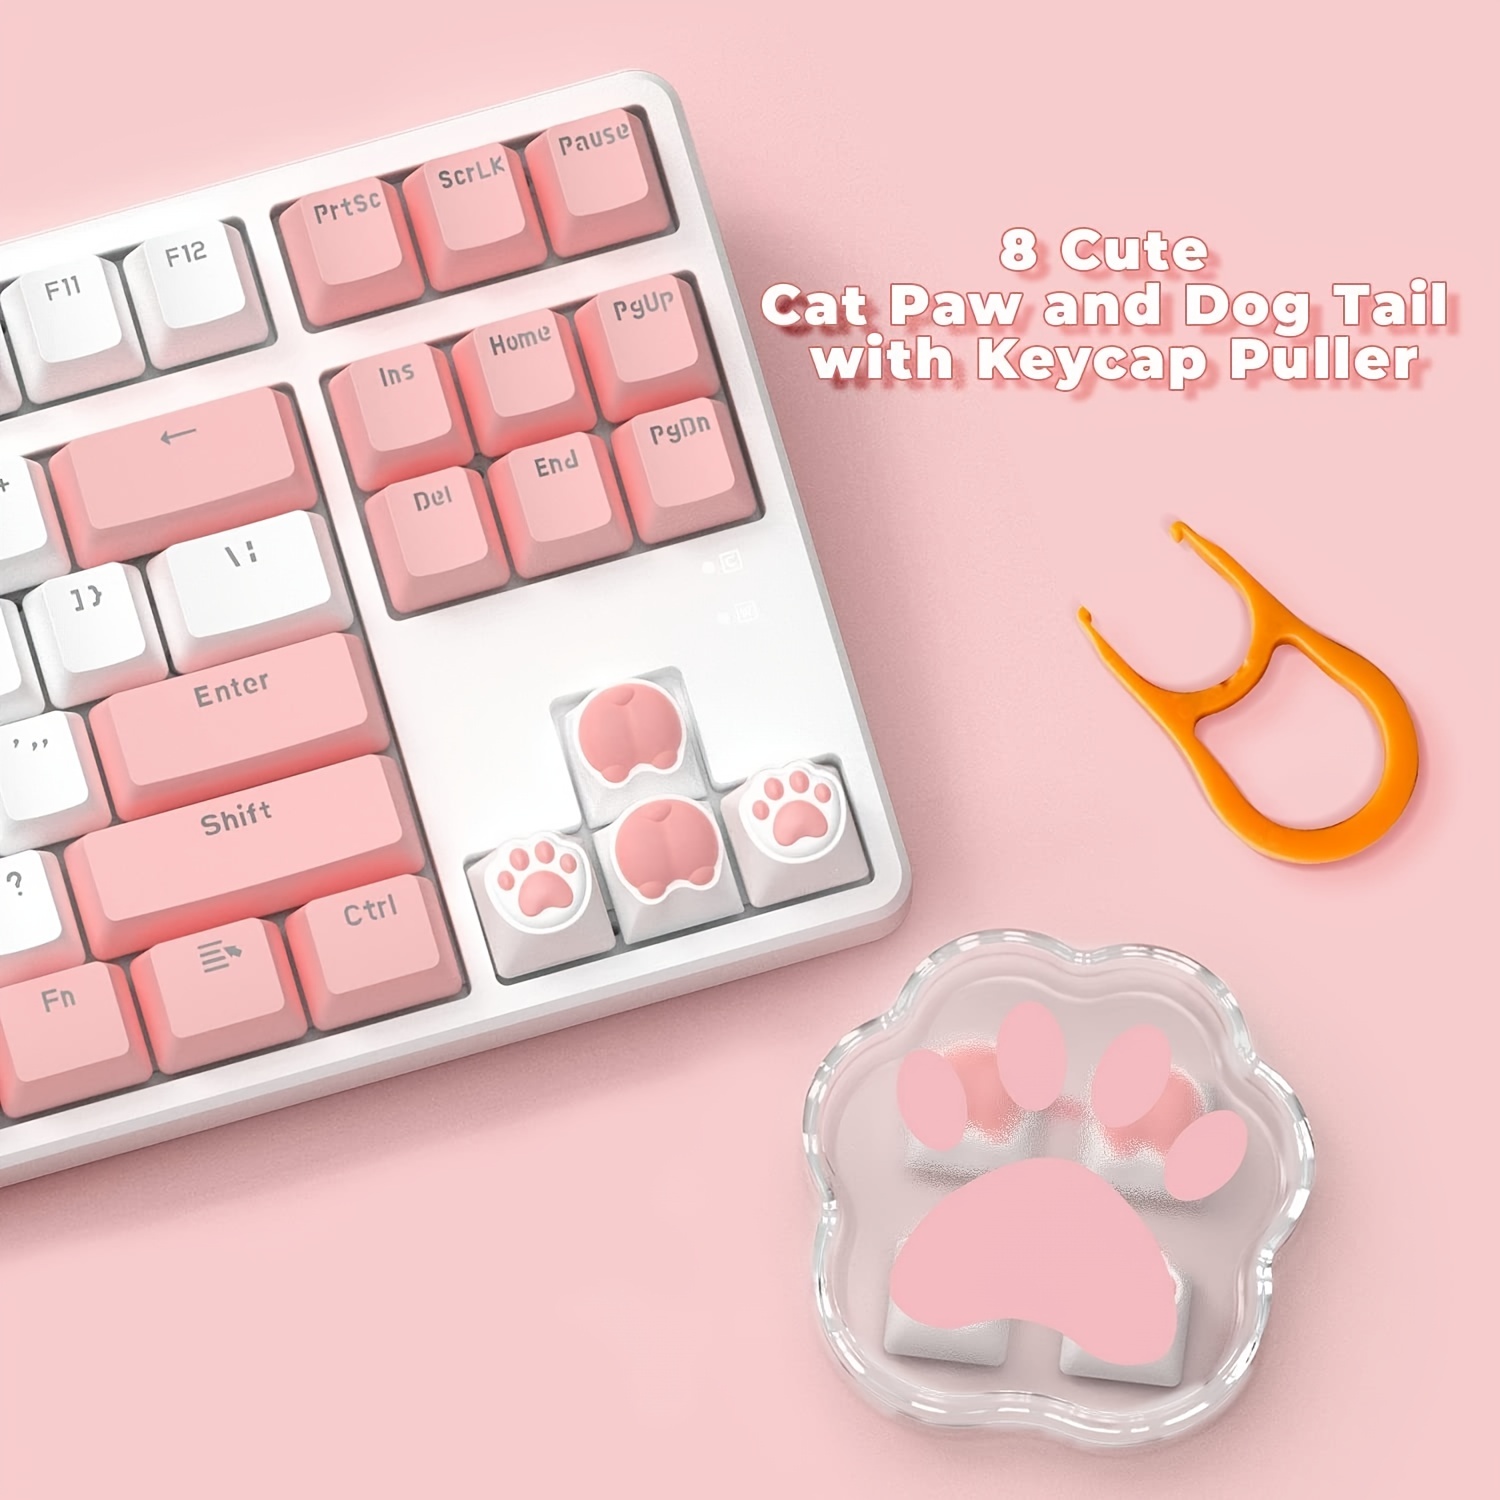 Paquete de 4 teclas personalizadas OEM R4 PBT, teclas de teclado mecánico  de pata de gato, teclas Kawaii para juegos para teclado mecánico con